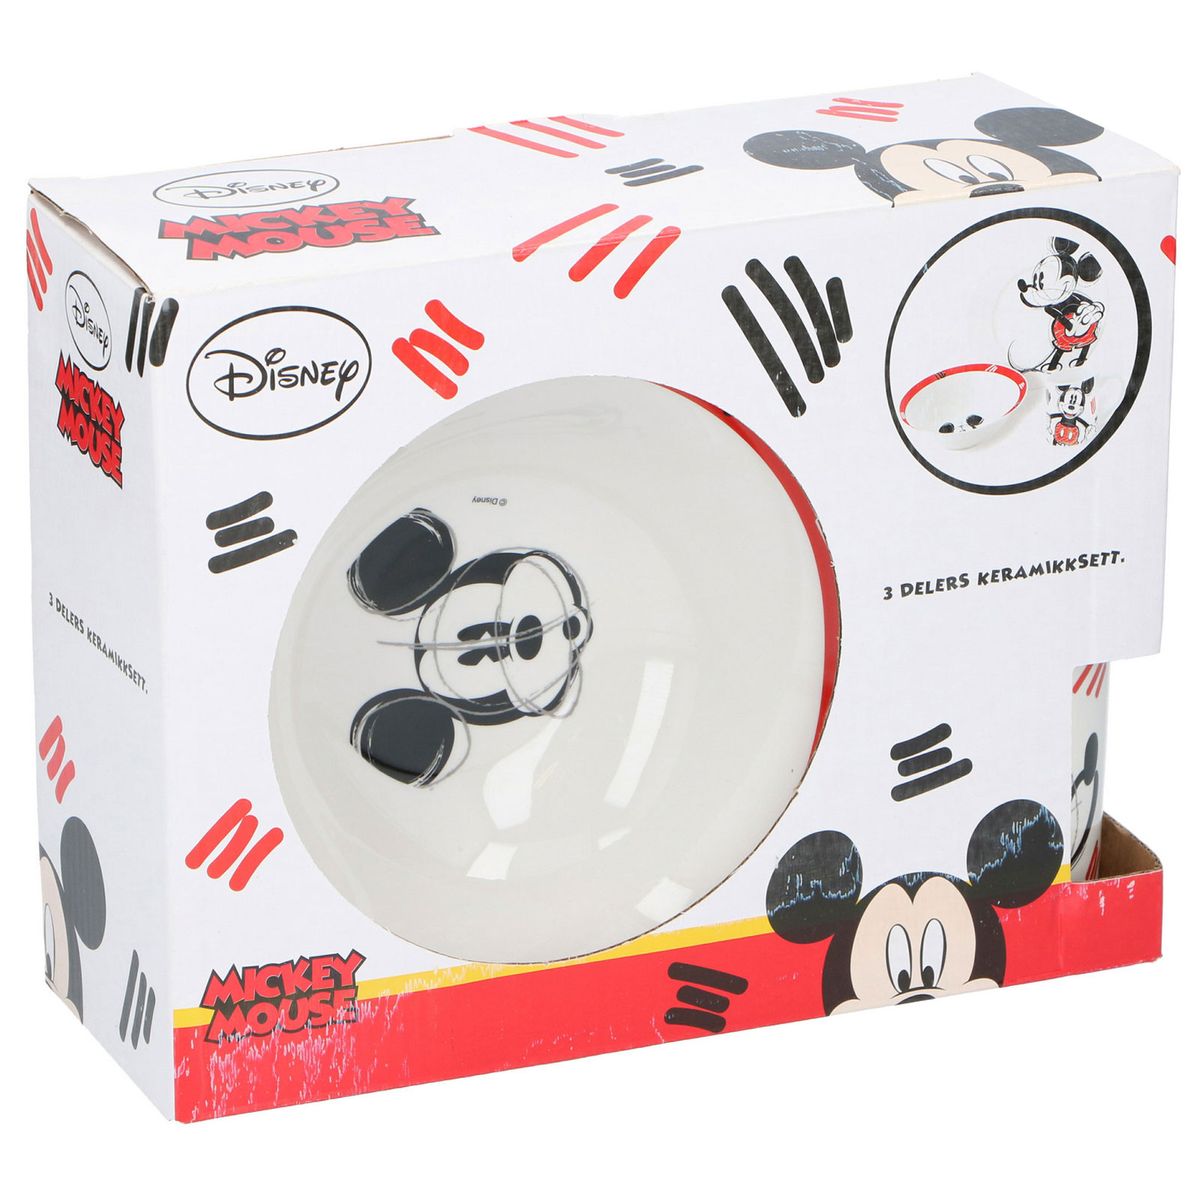 in Geschenkpackung Joy Toy 736095 aus Melamin: 2 Teller und 1 Tasse Disney Mickey Mouse 3-teilig Set